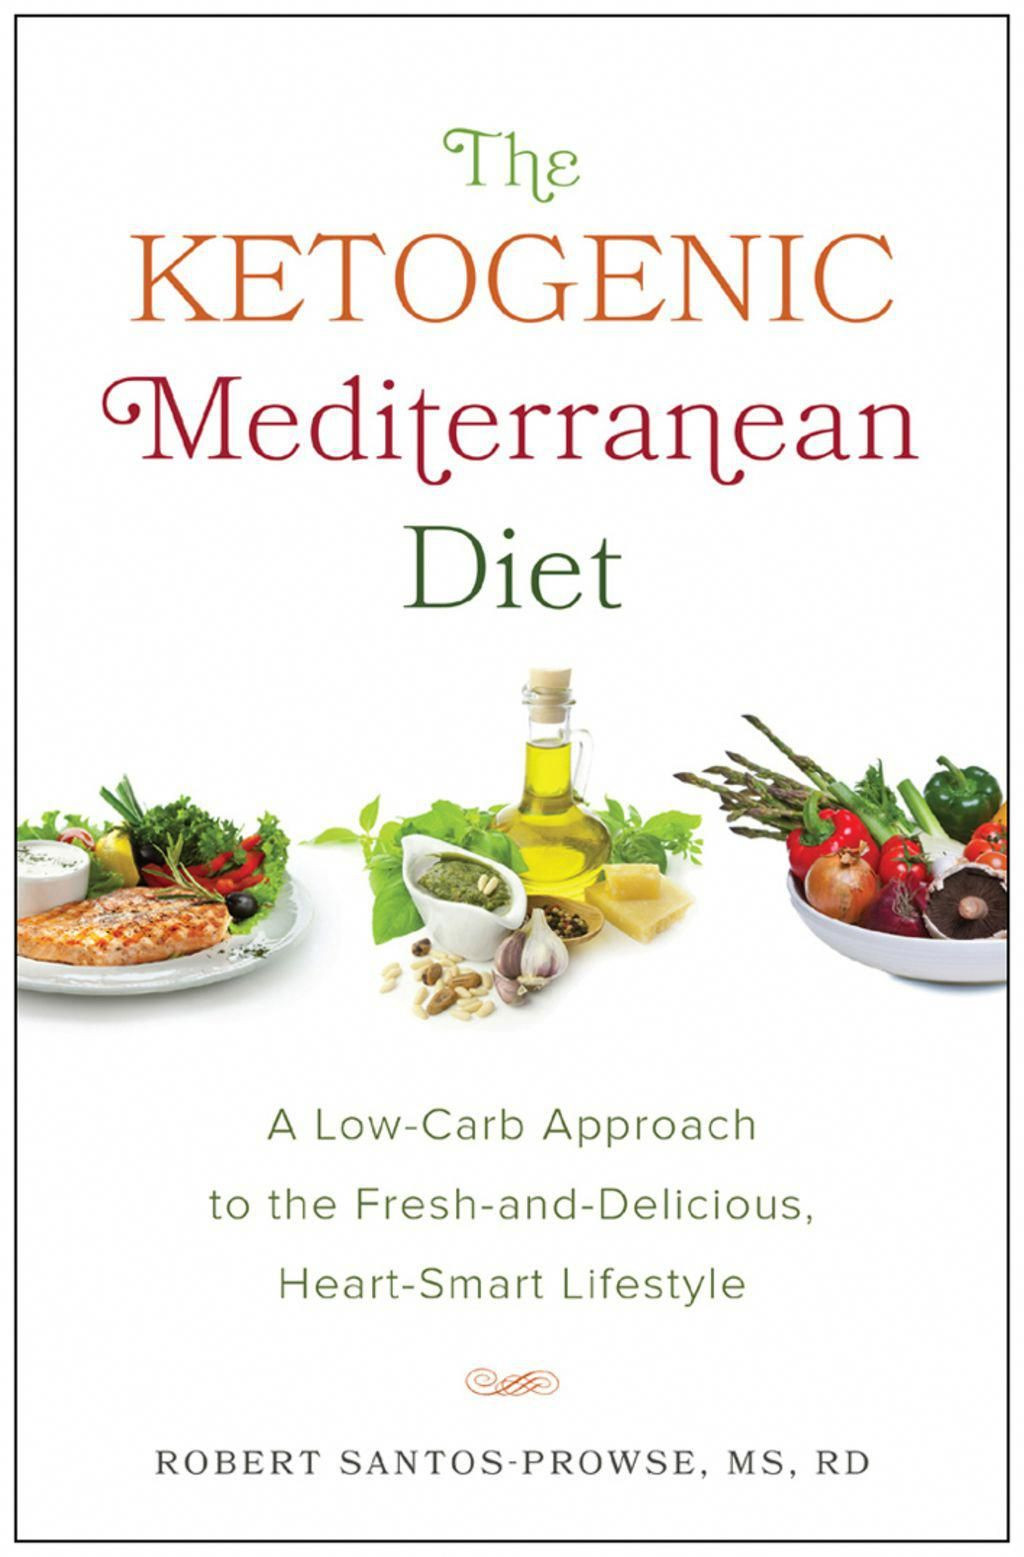 Mediterranean Keto Diet Plan
 The Ketogenic Mediterranean Diet eBook